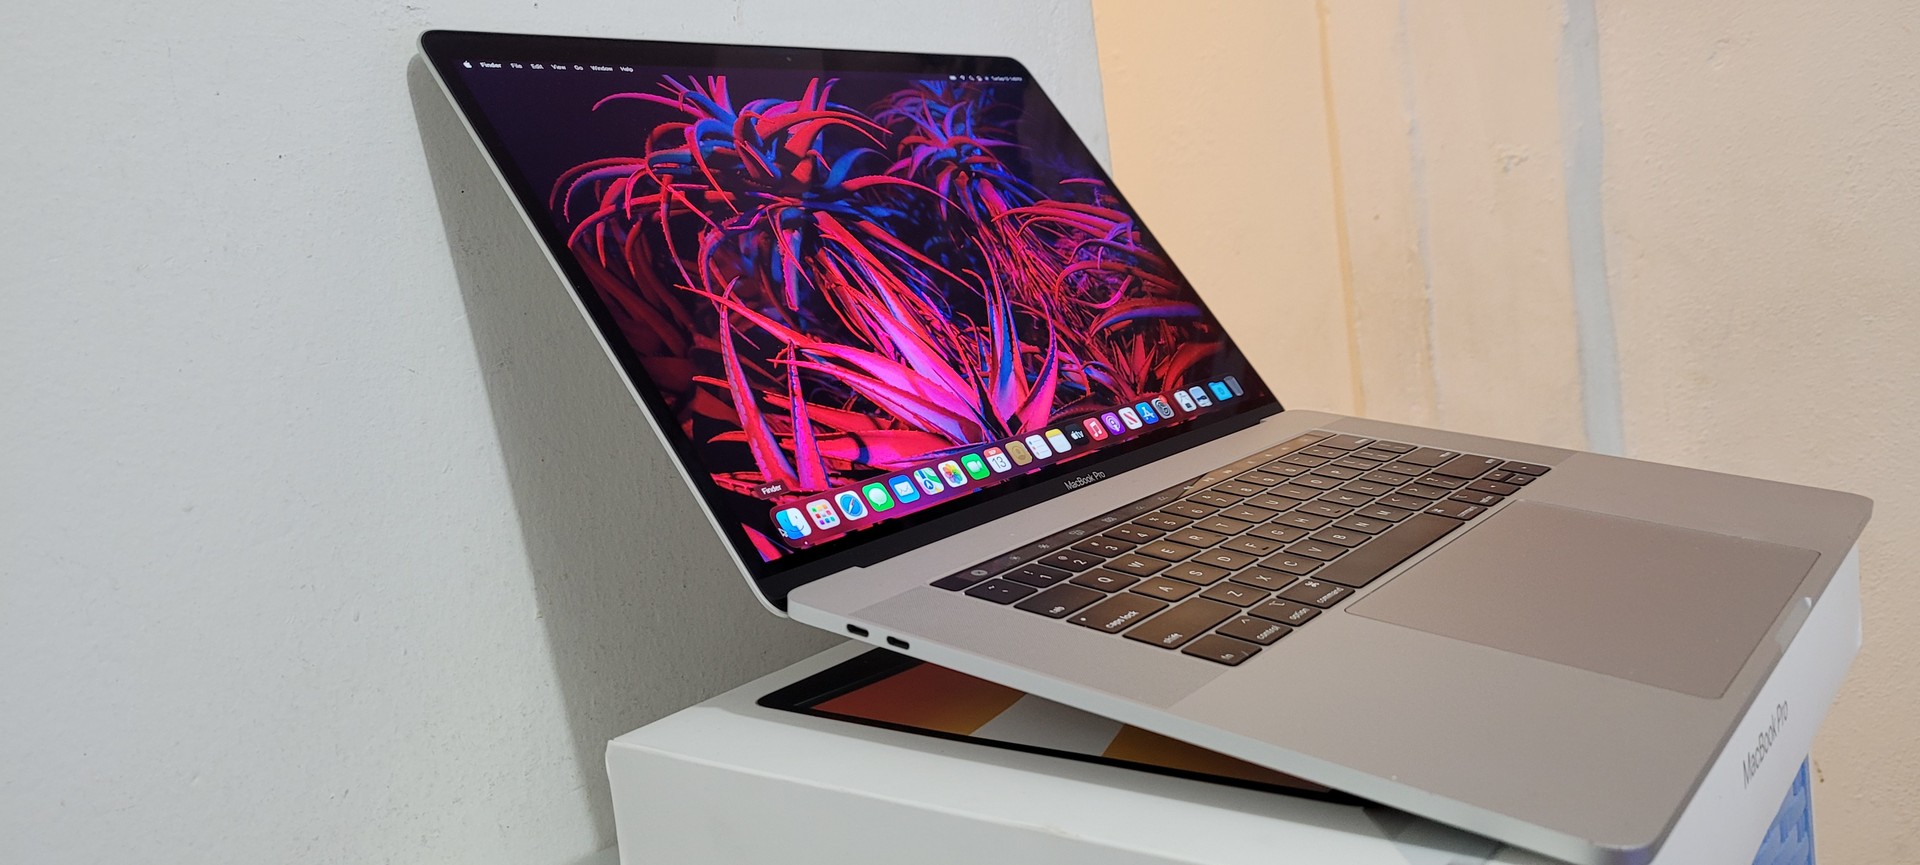 computadoras y laptops - Macbook Pro 15 Pulg Core i7 Ram 16gb en Caja año 2018